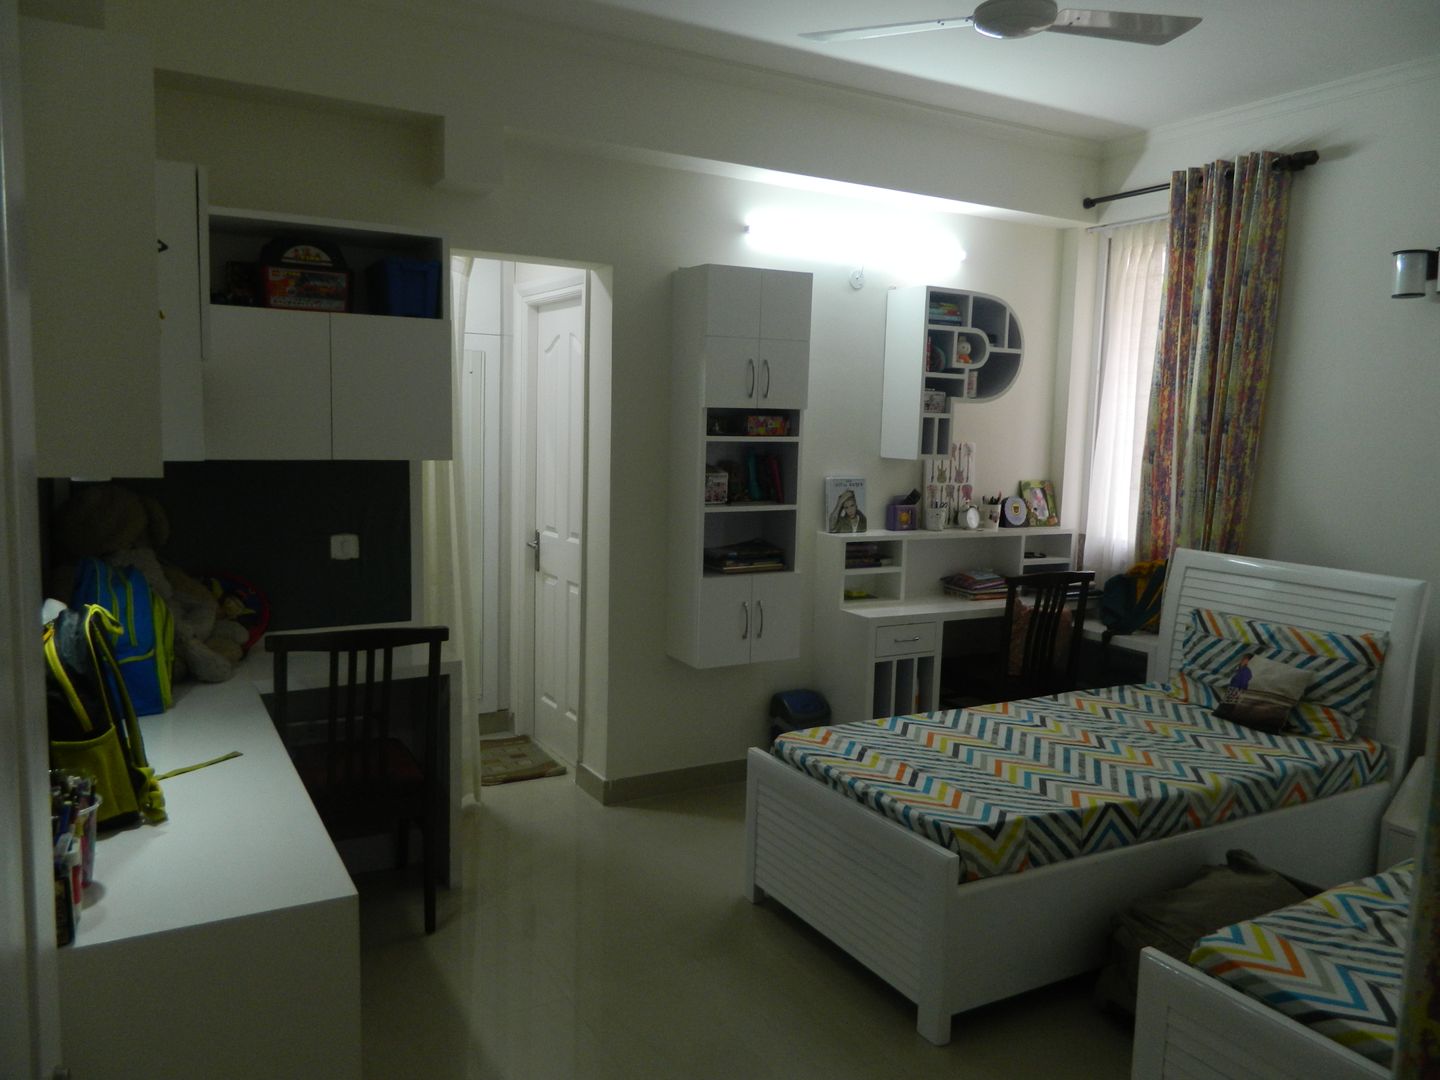 Kitchen & Interiors, Sector 46 Noida, hearth n home hearth n home Camera da letto piccola